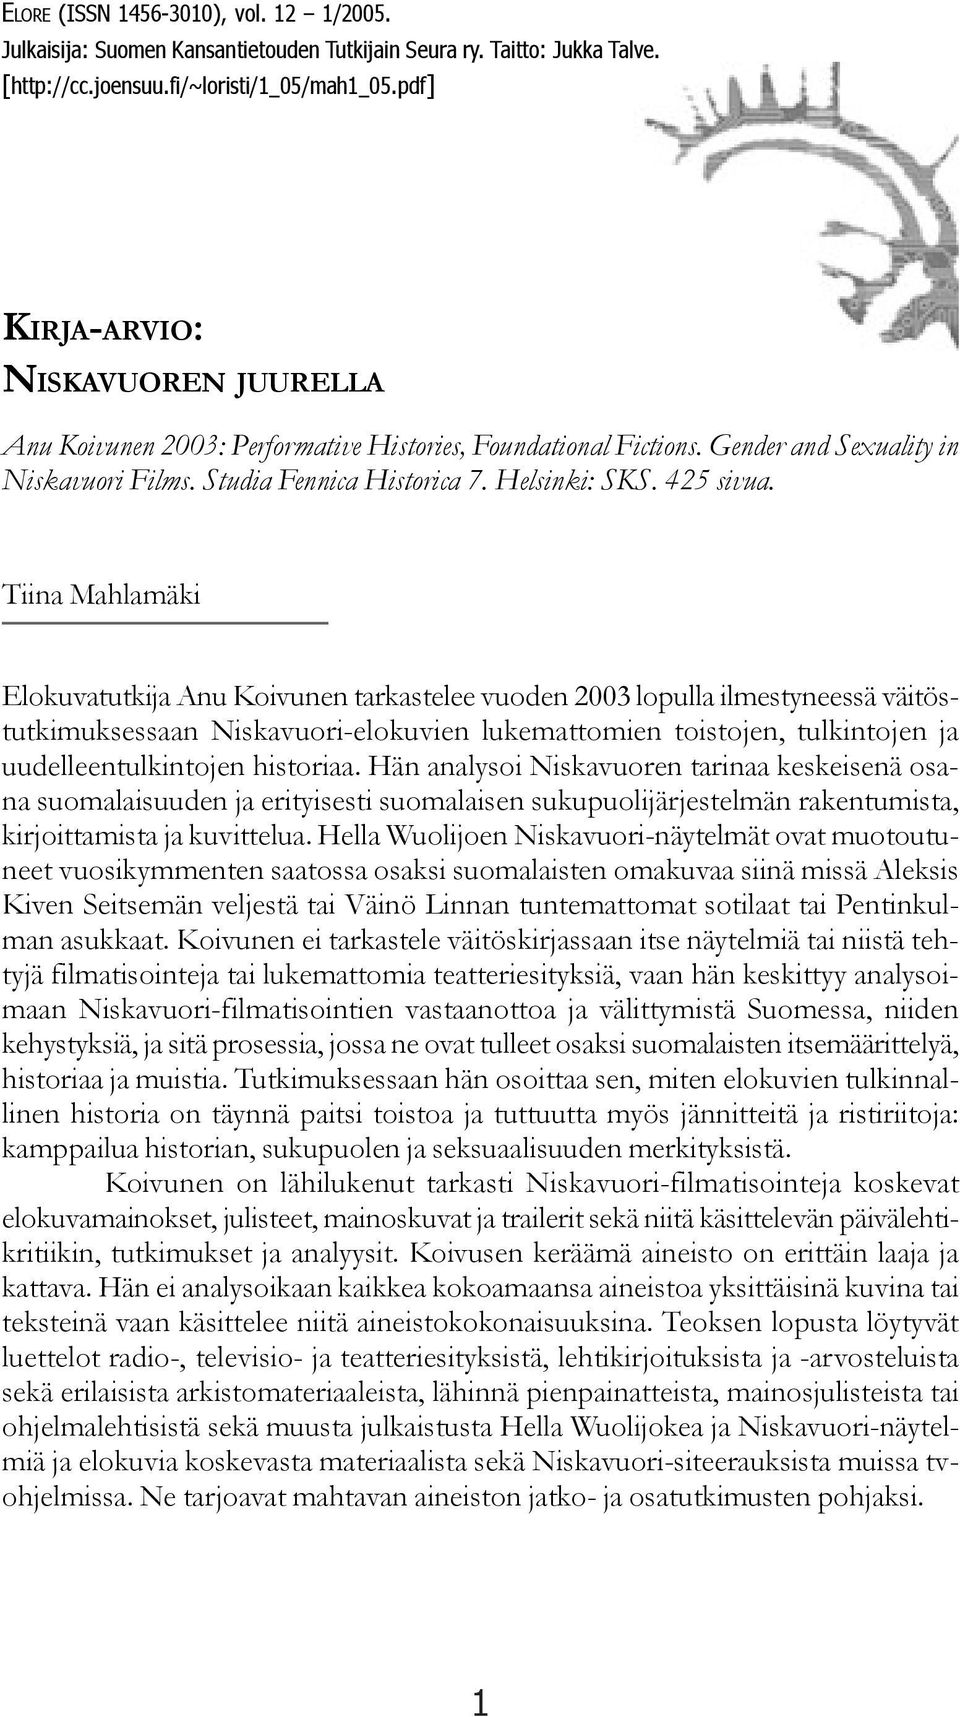 Tiina Mahlamäki Elokuvatutkija Anu Koivunen tarkastelee vuoden 2003 lopulla ilmestyneessä väitöstutkimuksessaan Niskavuori-elokuvien lukemattomien toistojen, tulkintojen ja uudelleentulkintojen